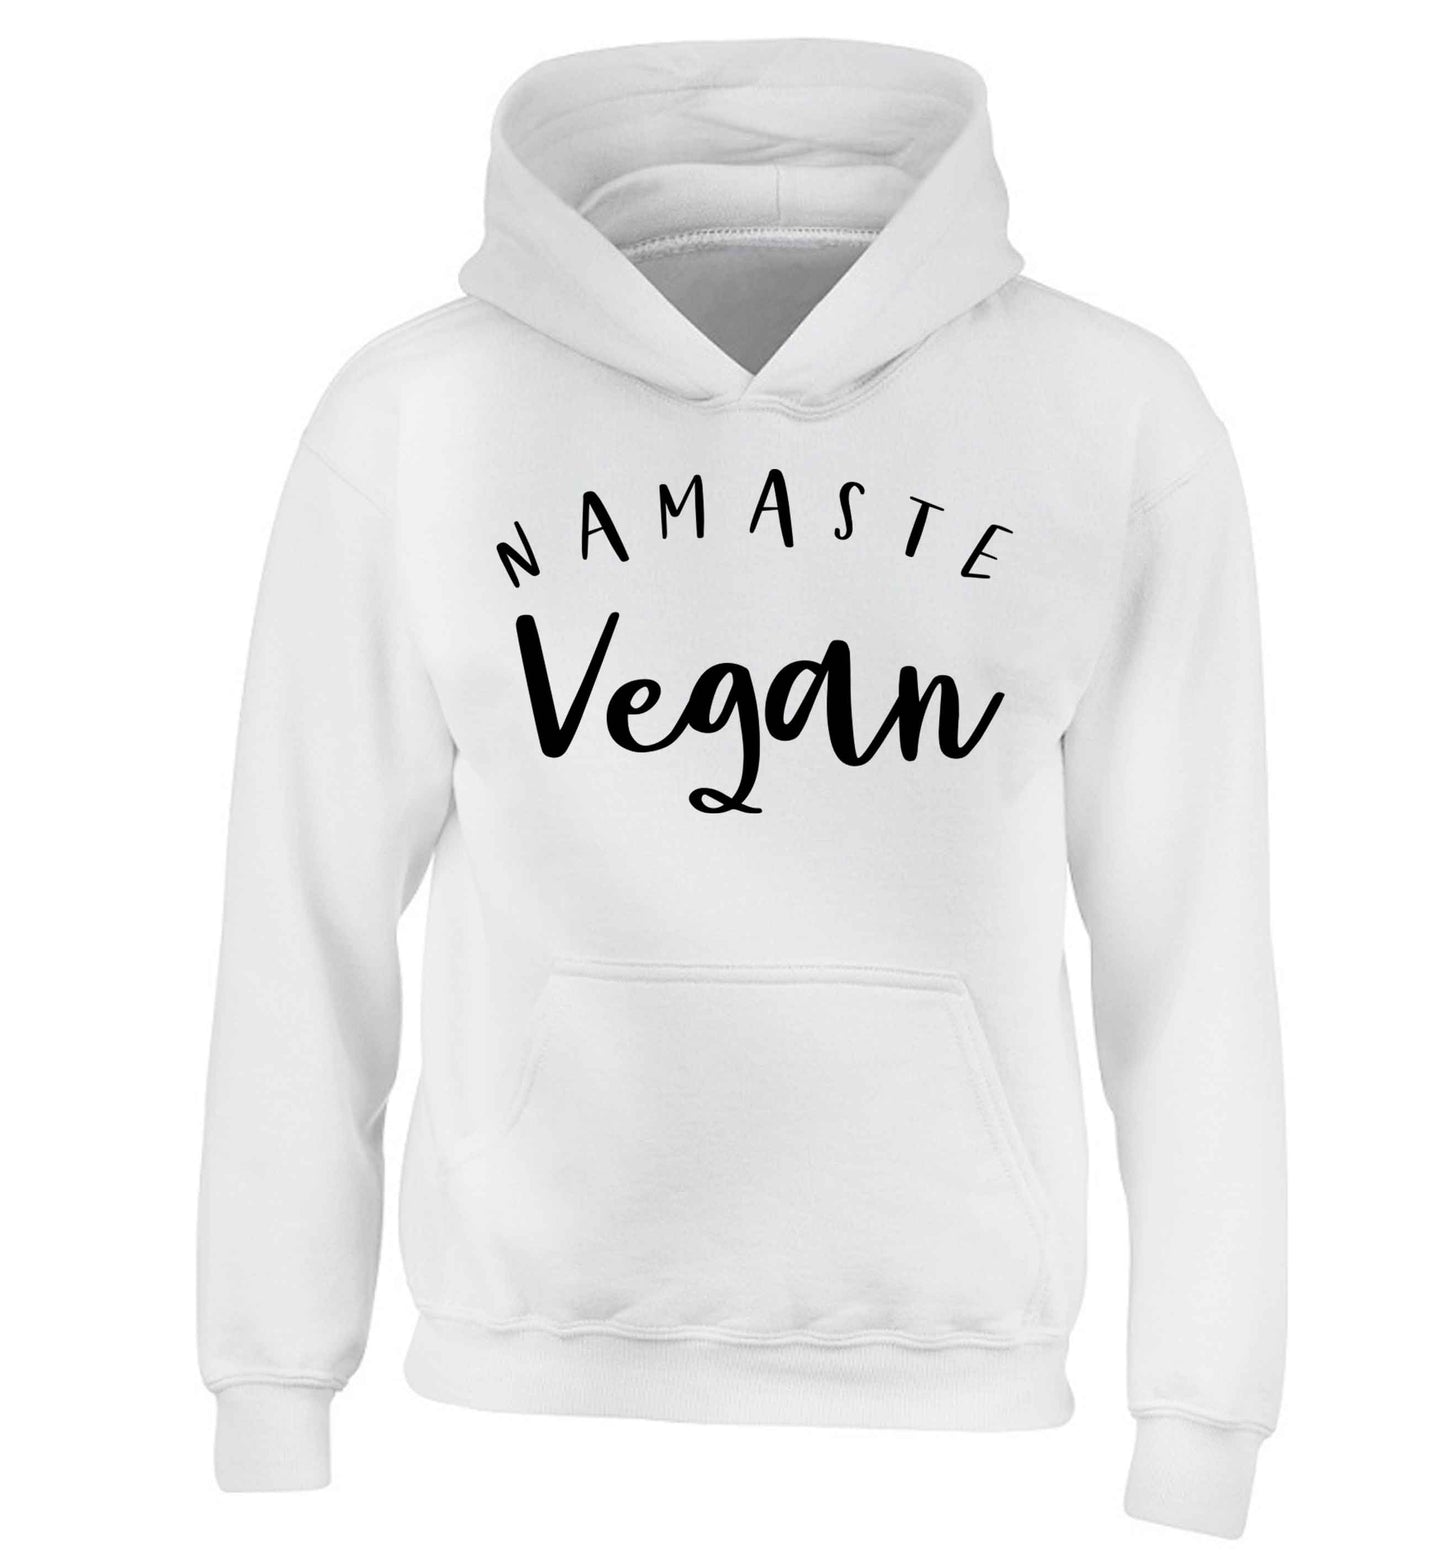 Namaste vegan children's white hoodie 12-13 Years